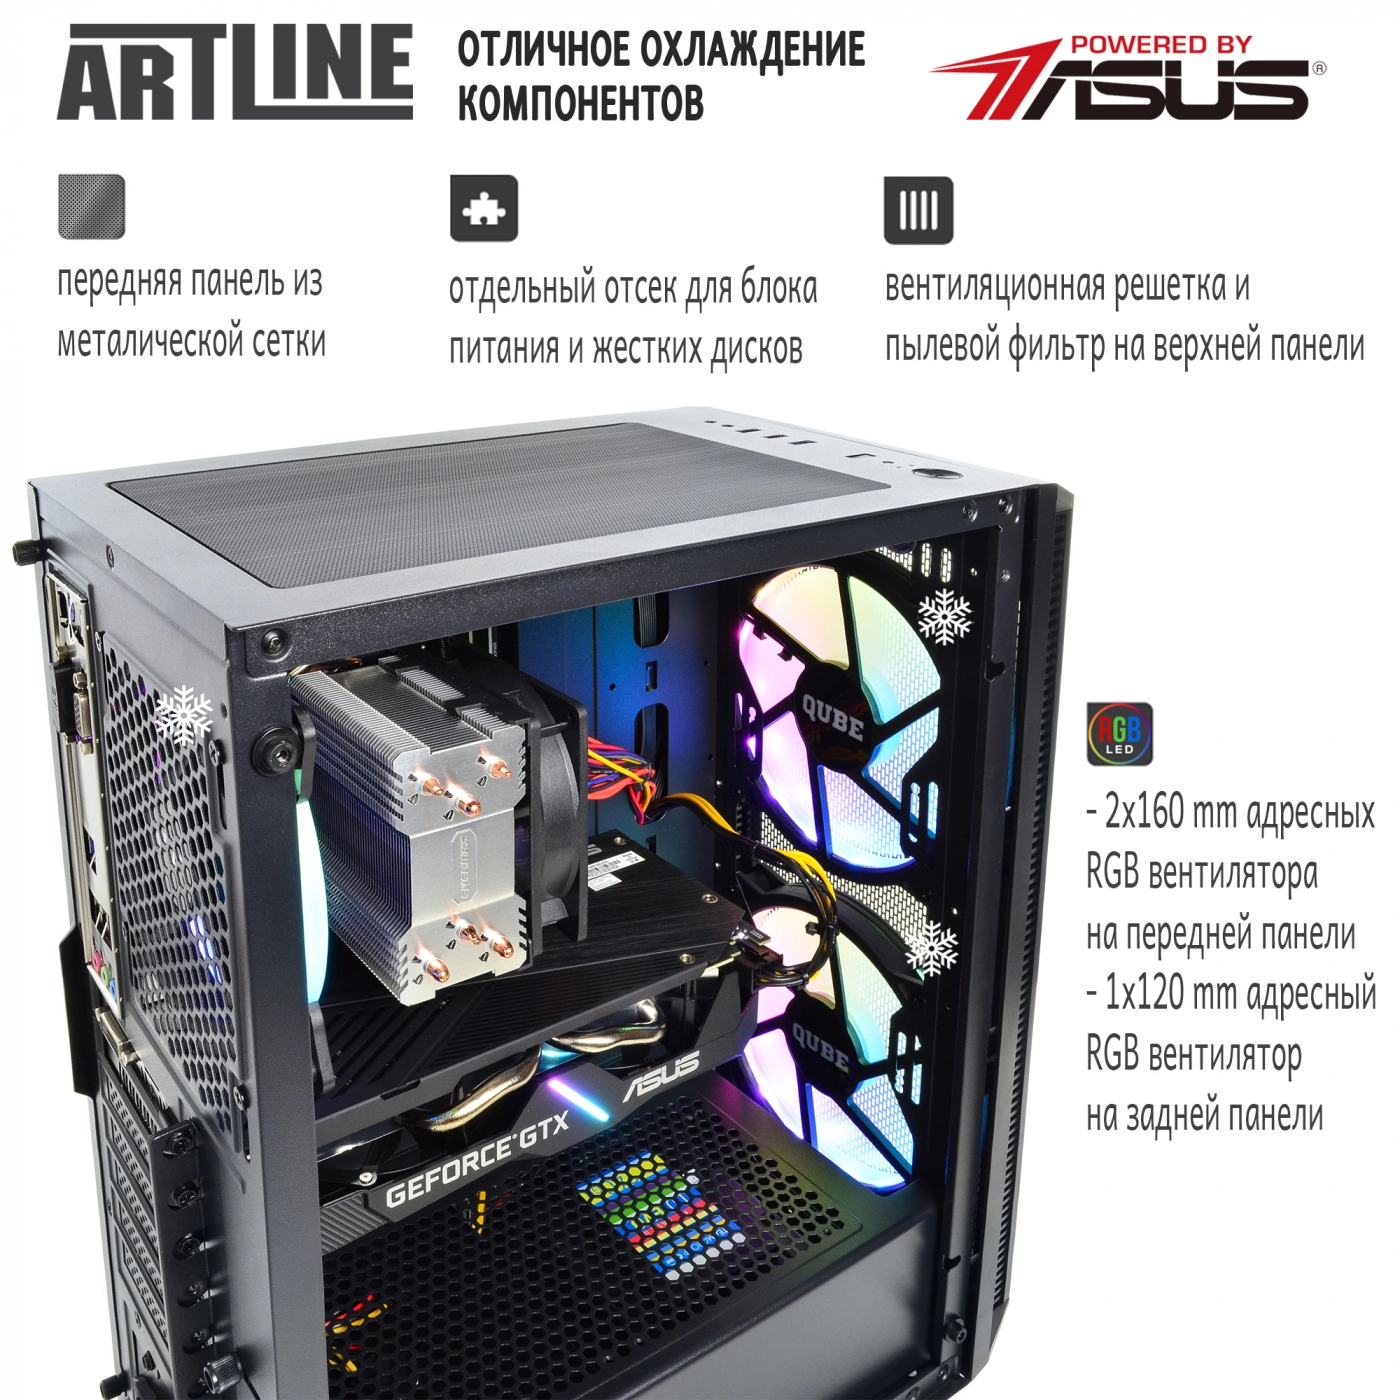 Купить Компьютер ARTLINE Gaming X39v33 - фото 2